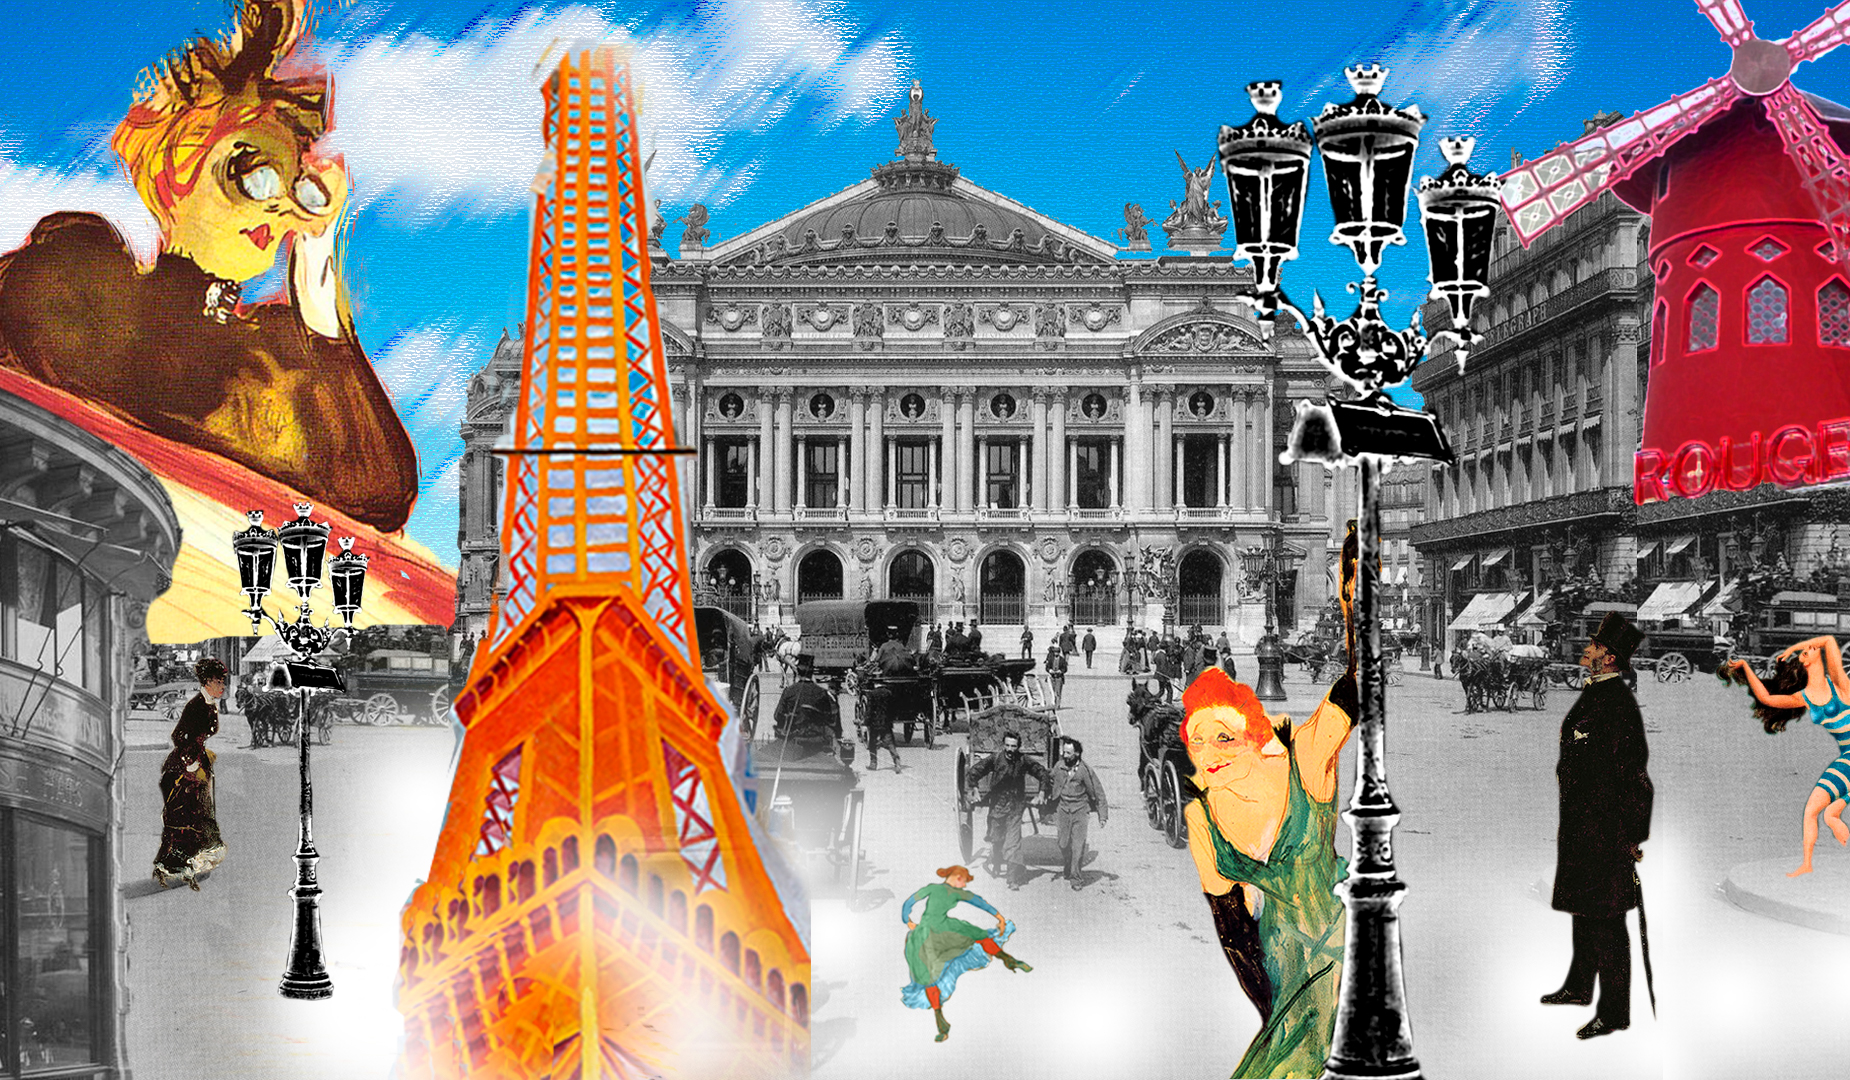 Collage Opera Garnier y calle con caballos en blanco y negro , con Mouline rouge, modelos de Toulouse Lautrec, bañista de Picasso y Torre Eiffel de Delaunay - la Belle Epoque - Surrealismo. Loco Mundo Arte y Bohemia